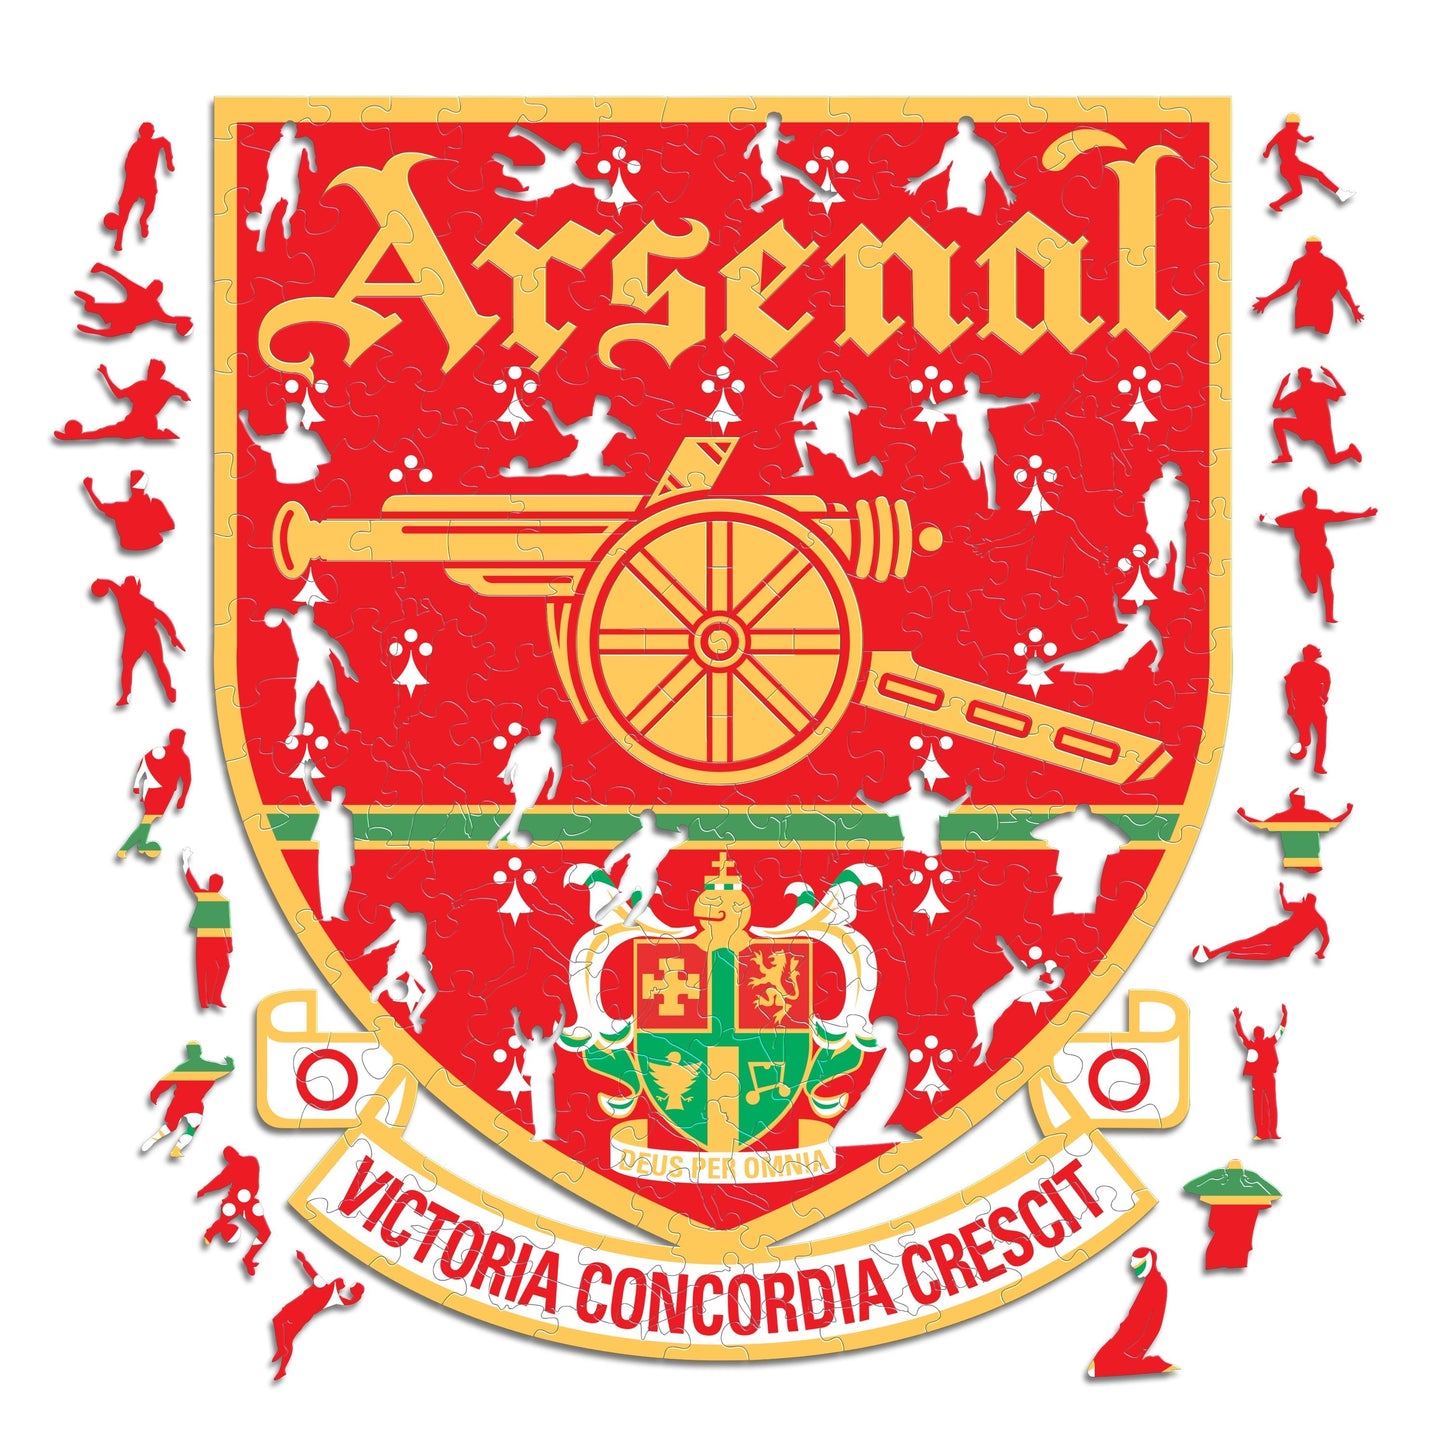 3 PACK Arsenal FC® Crest + Retro Crest + Emirates Stadium